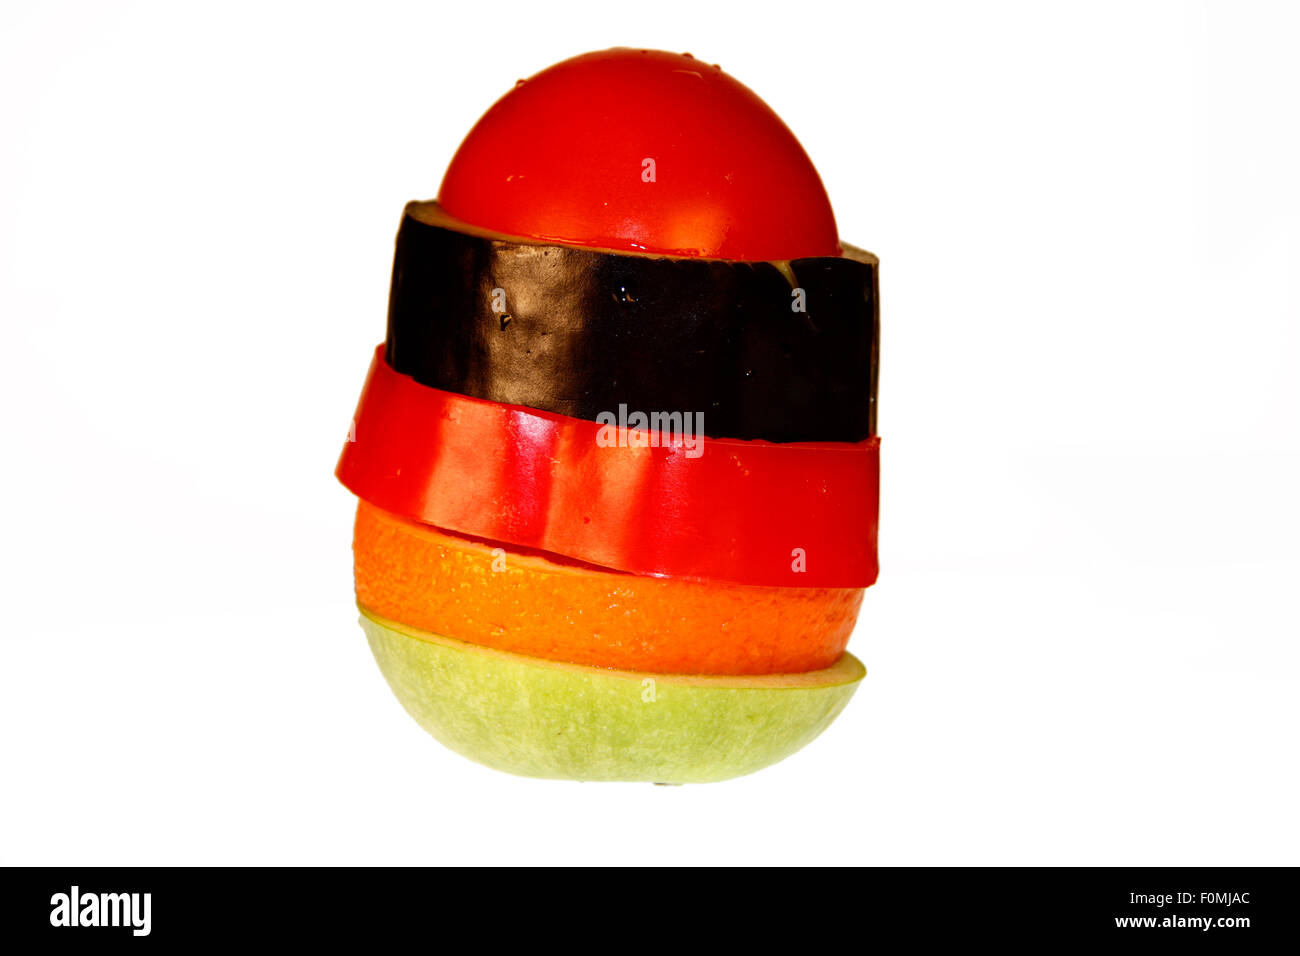 Frucht zusammengesetzt aus Tomate, Aubergine, Paprikaschote, Orange und Apfel - Symbolbild Nahrungsmittel. Stock Photo